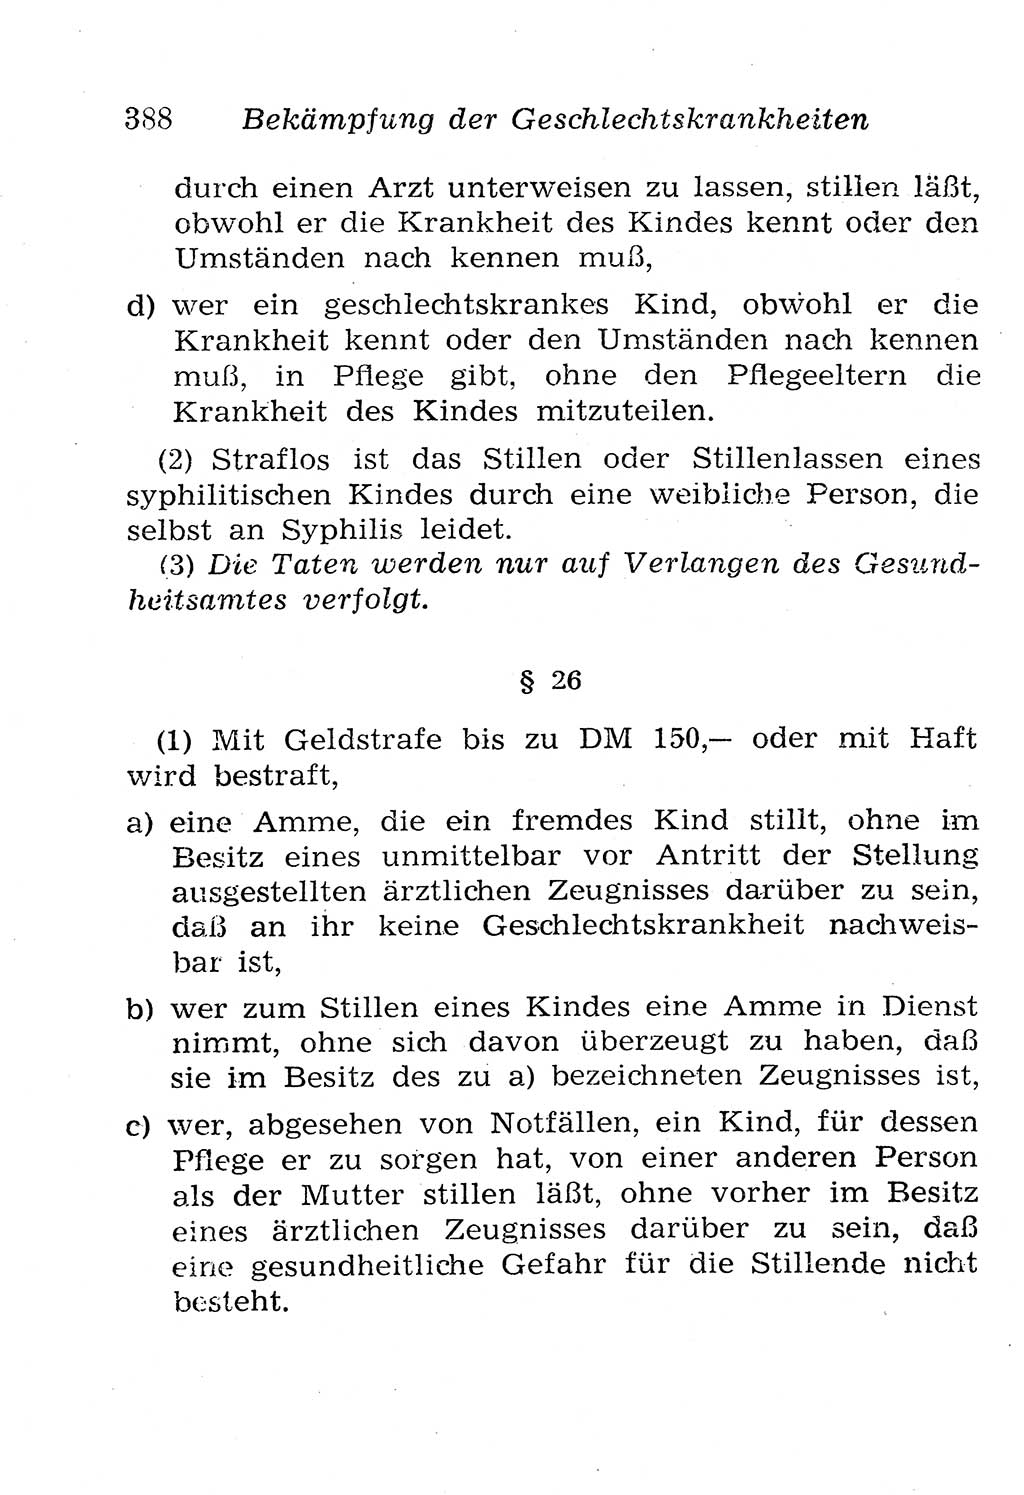 Strafgesetzbuch (StGB) und andere Strafgesetze [Deutsche Demokratische Republik (DDR)] 1958, Seite 388 (StGB Strafges. DDR 1958, S. 388)